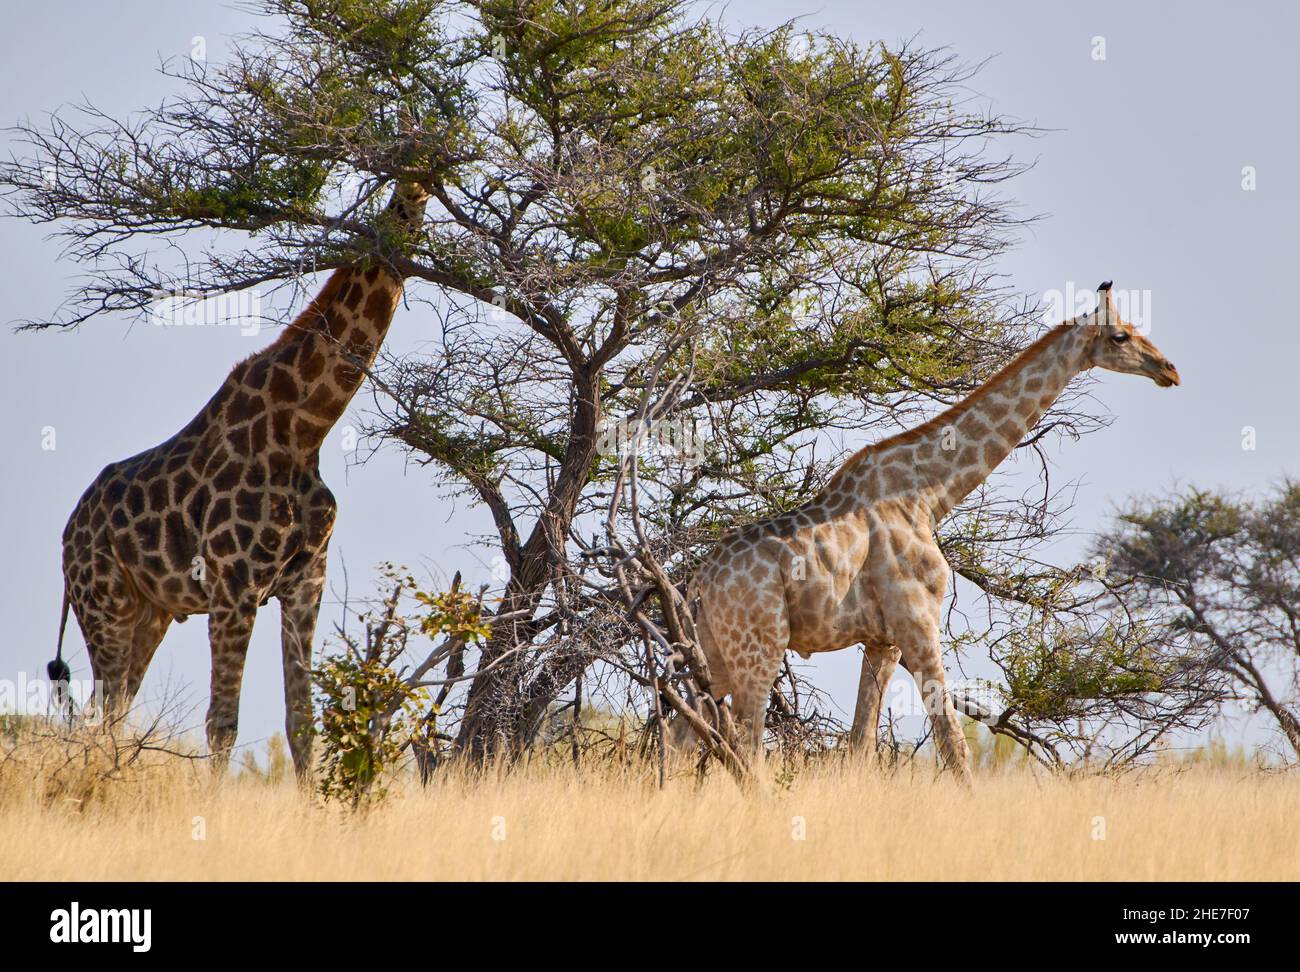 Vue latérale de deux girafes traversant le désert.Animaux de safari et faune au parc national d'Etosha, Namibie, Afrique australe. Banque D'Images